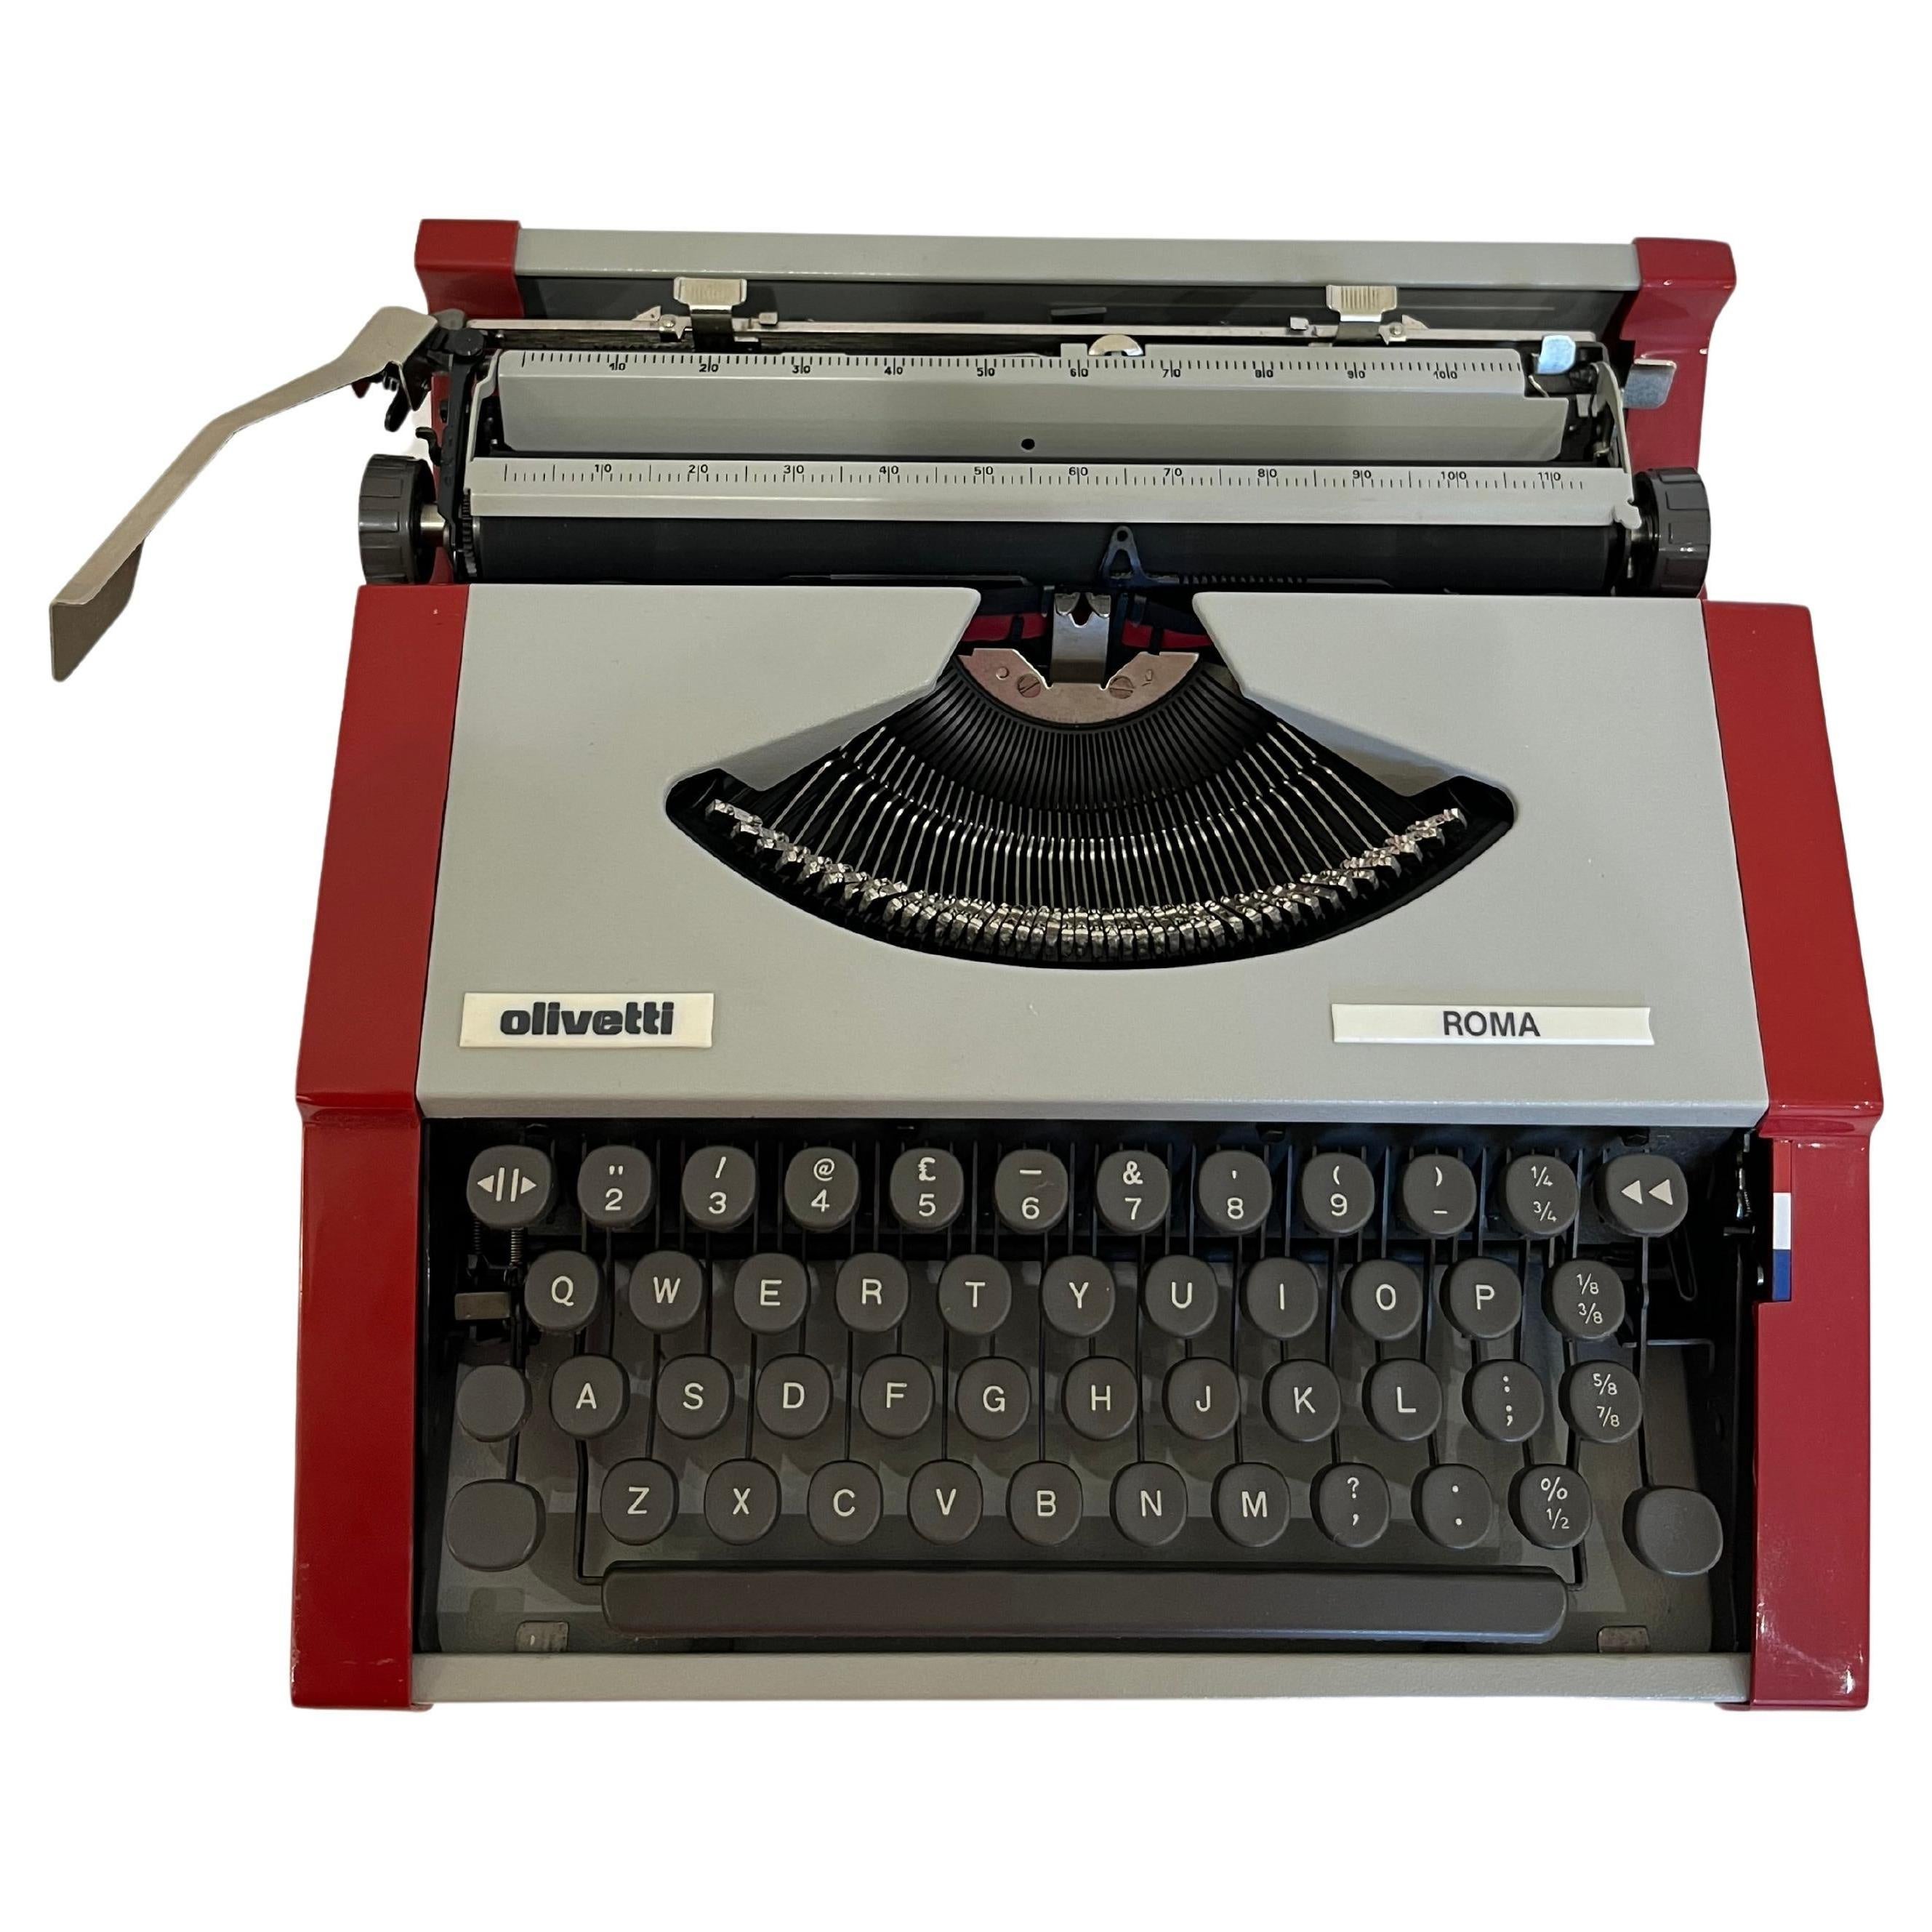 Máquina de escribir portátil Olivetti modelo Roma 1984
Producida, como la Lettera 82, en la fábrica brasileña de Olivetti.
Intacto y funcional, equipado con funda de transporte.

Características: Máquina de escribir manual portátil.
Teclado: 42